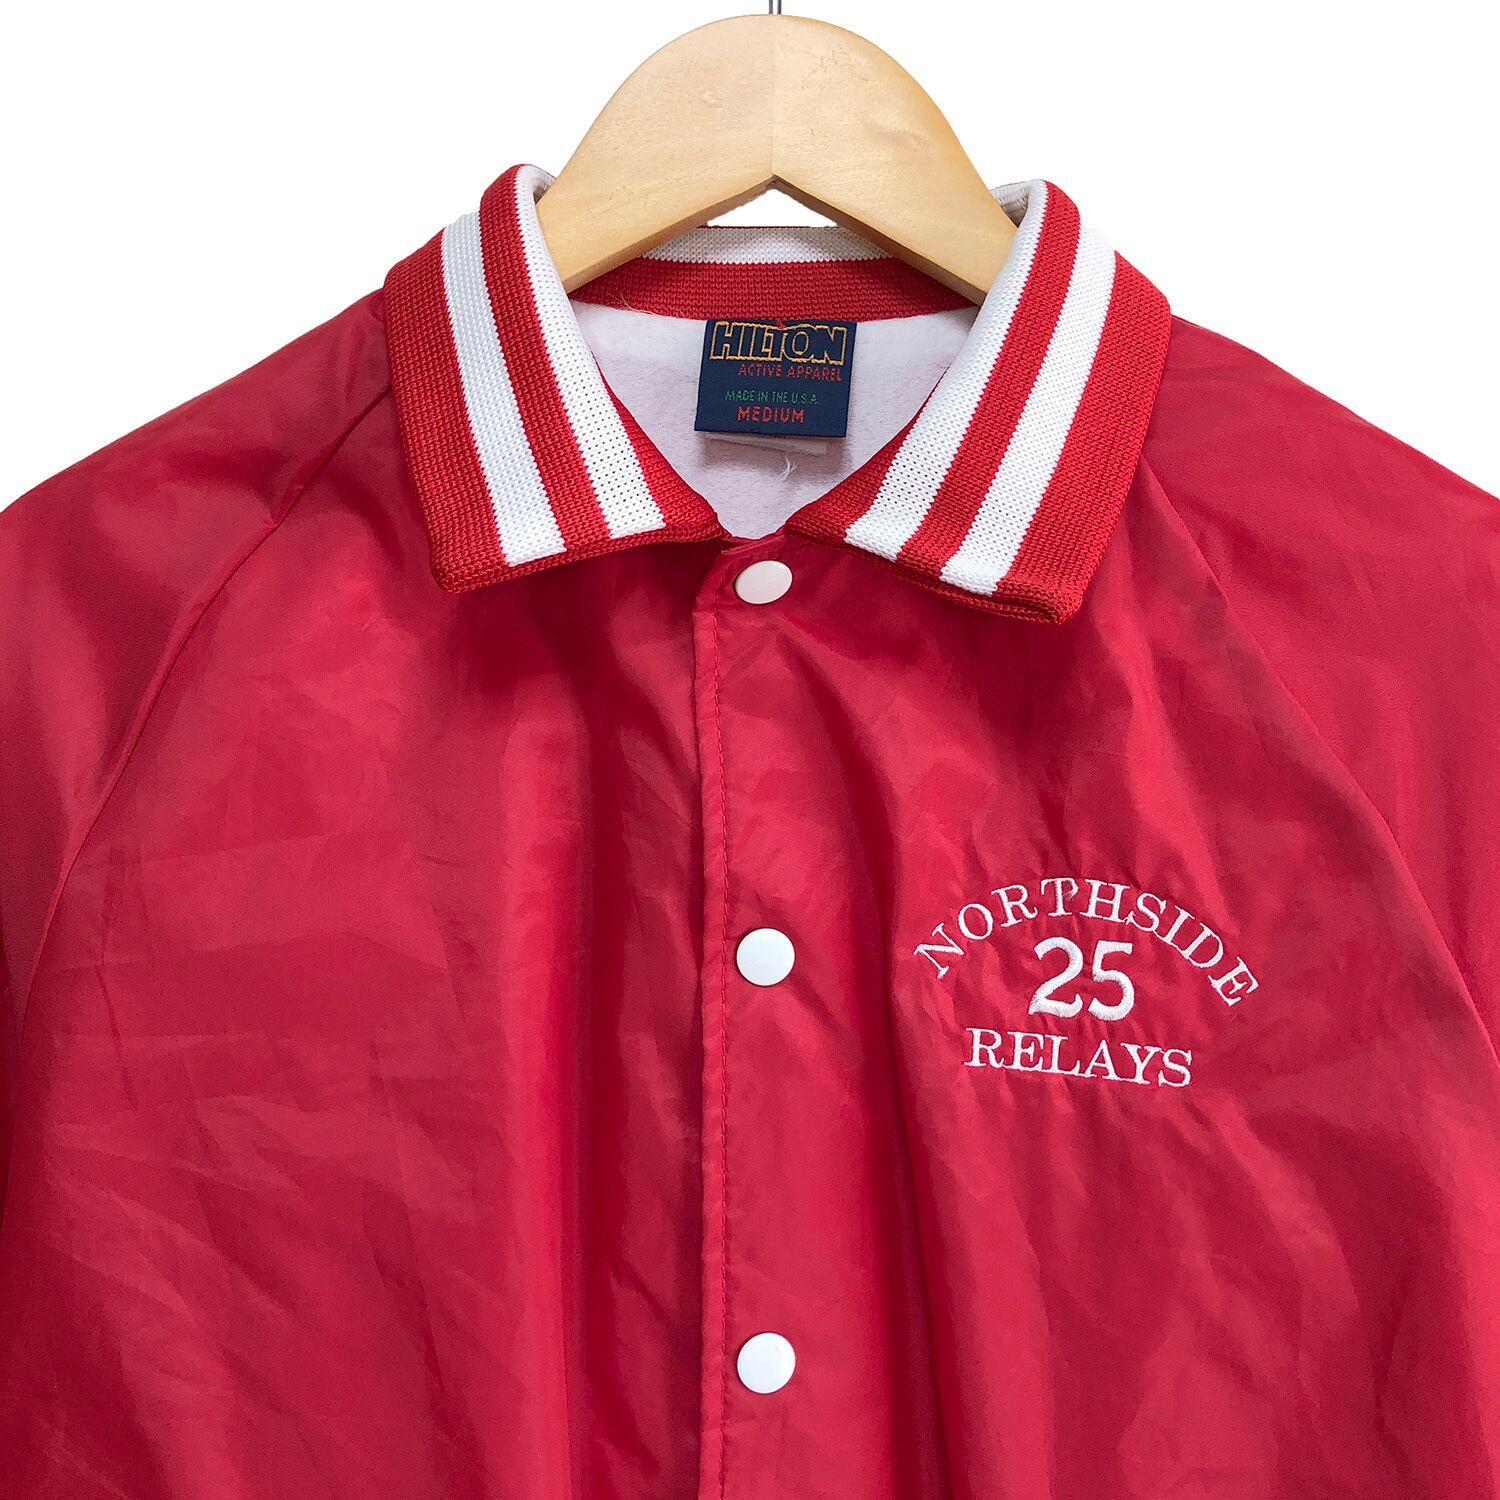 90S USA製 ヒルトン ヴィンテージ ナイロンコーチジャケット メンズM 赤色 HILTON スポーツ ナイロンジャケット 古着